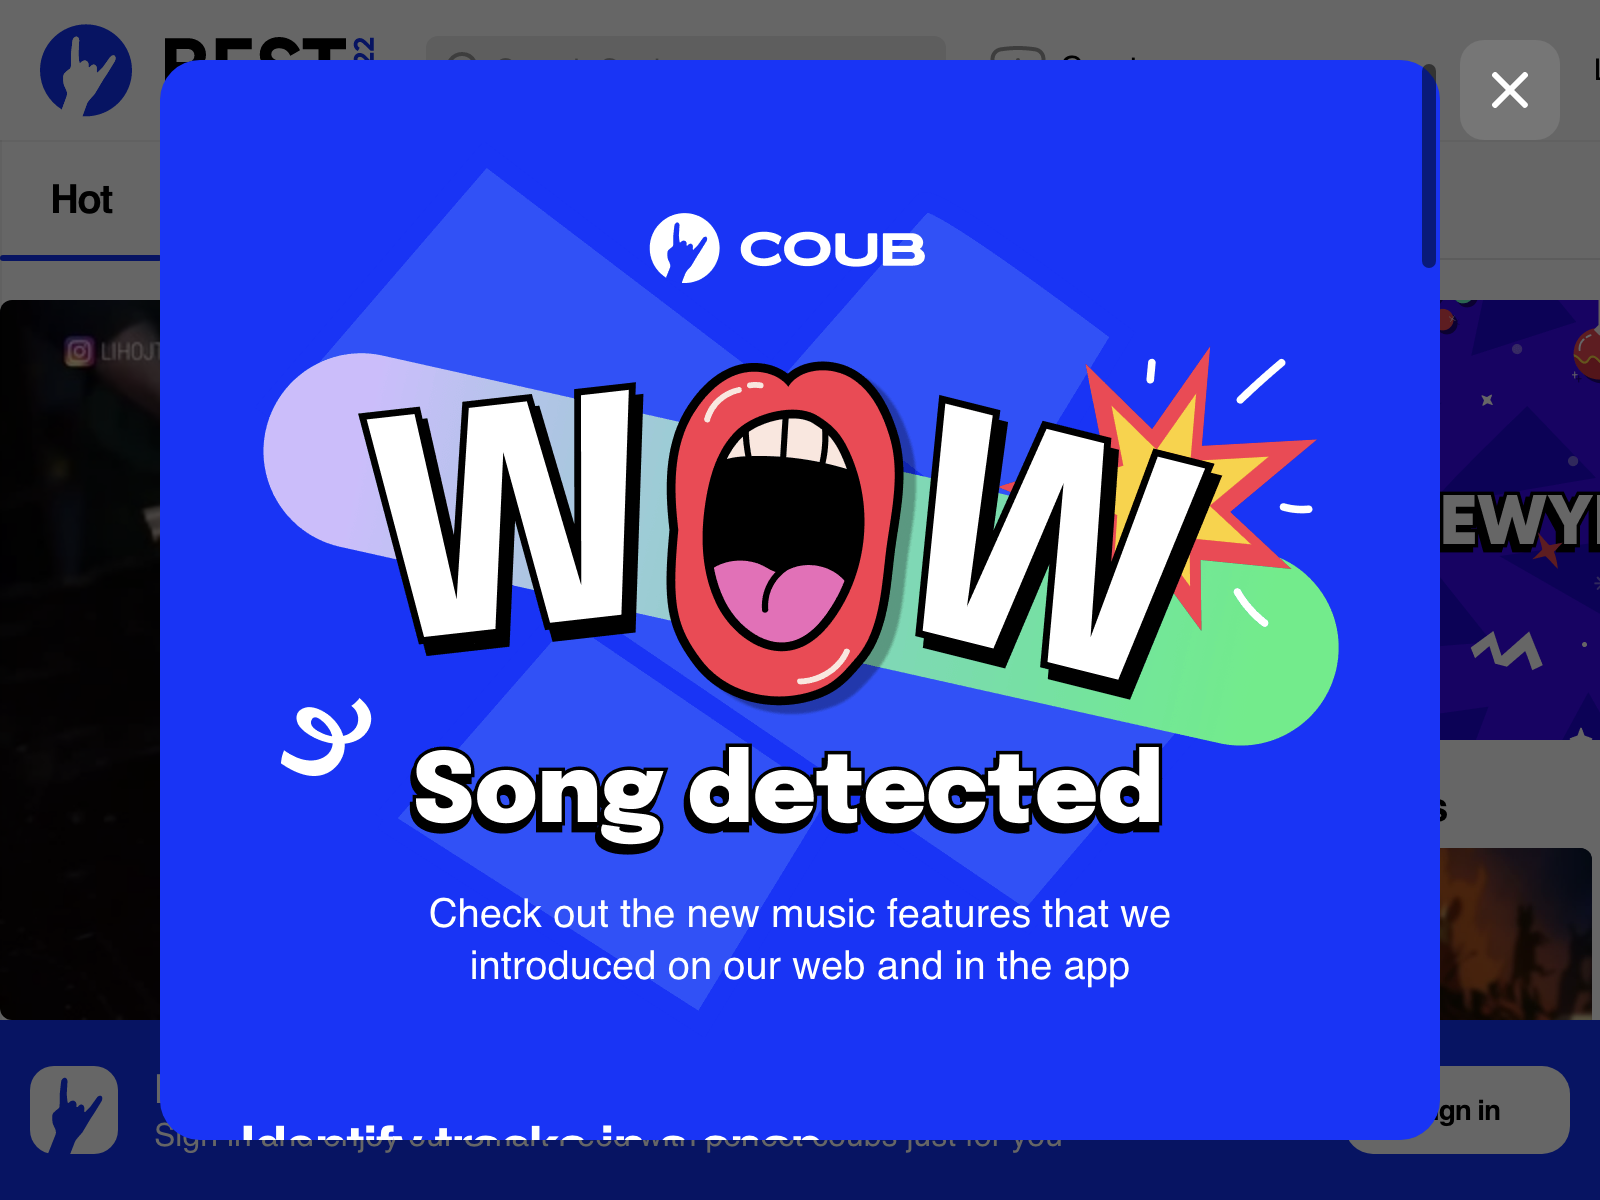 coub.com